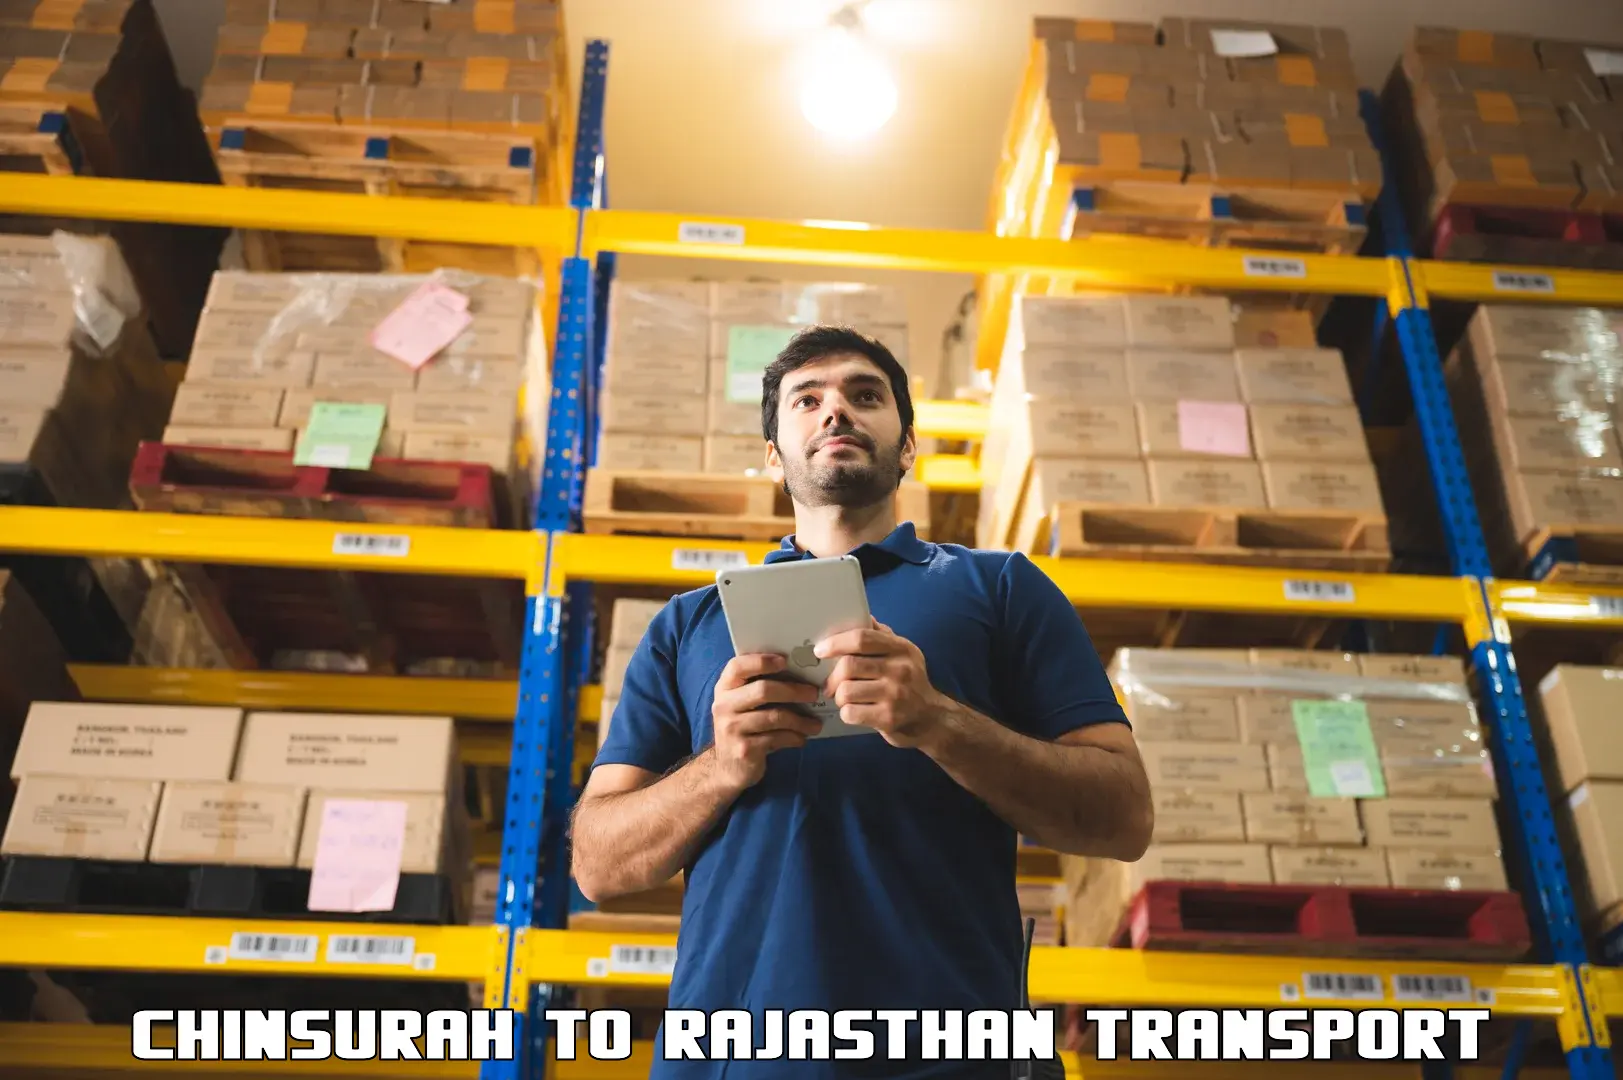 Furniture transport service Chinsurah to Jaipur